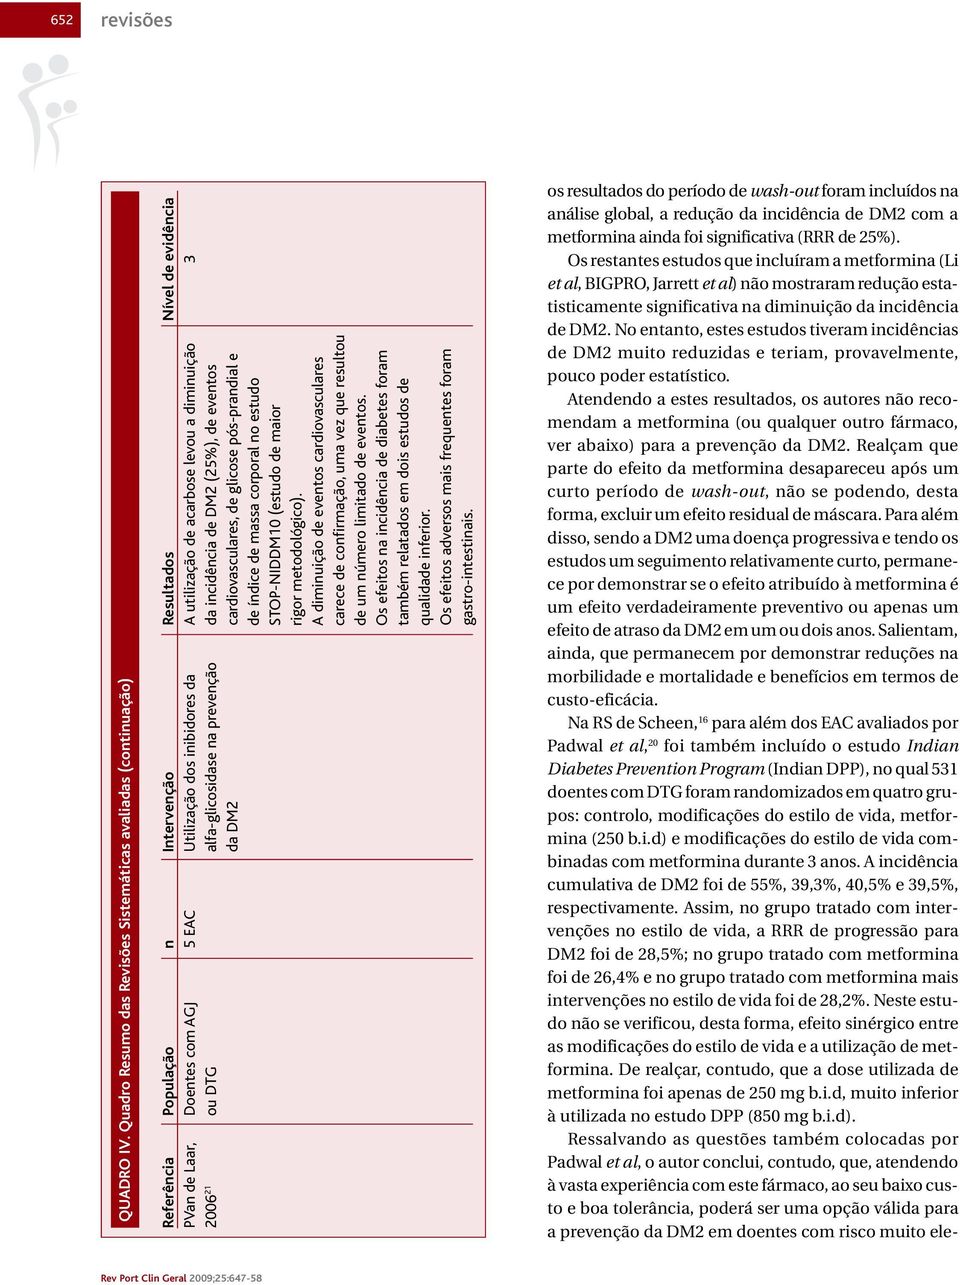 utilização de acarbose levou a diminuição 3 2006 21 ou DTG alfa-glicosidase na prevenção da incidência de DM2 (25%), de eventos da DM2 cardiovasculares, de glicose pós-prandial e de índice de massa